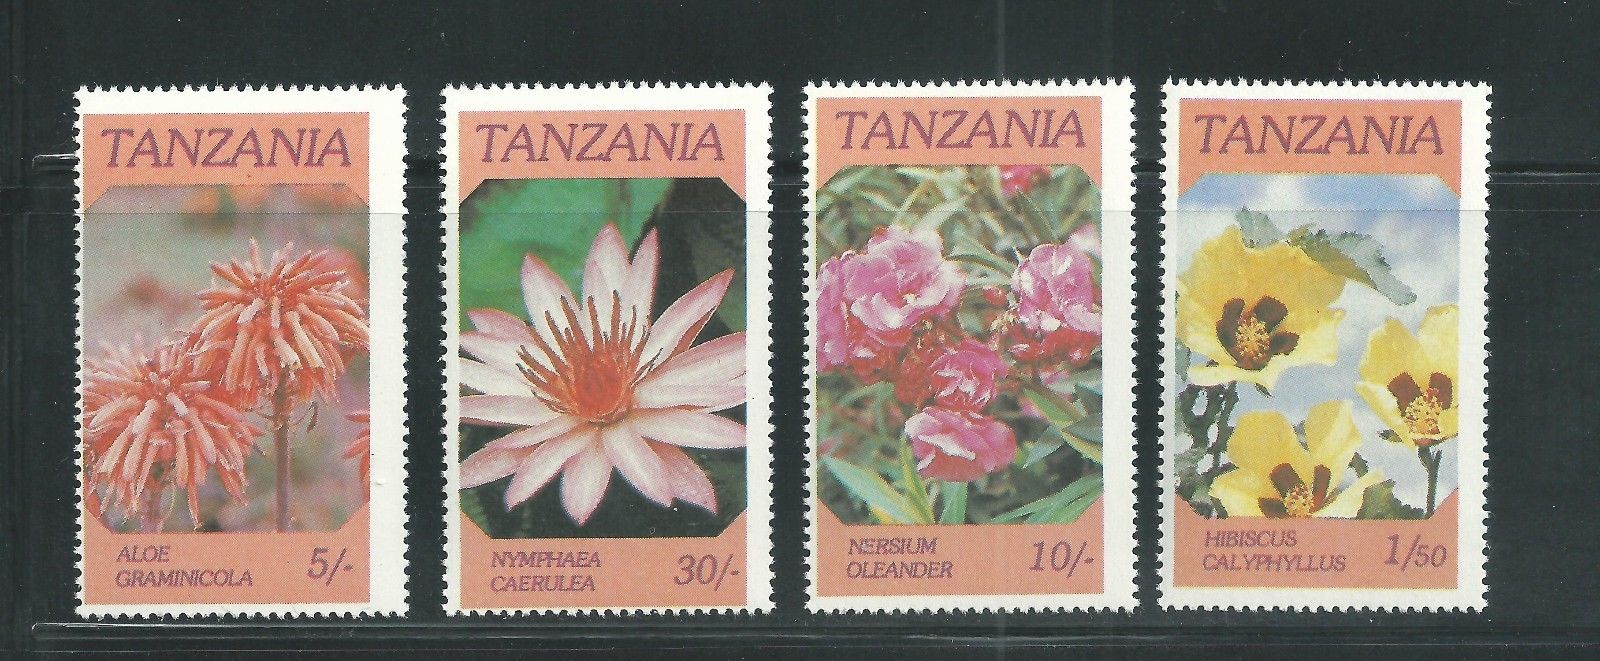 Tanzania Scott # 315-318 MNH Flowers